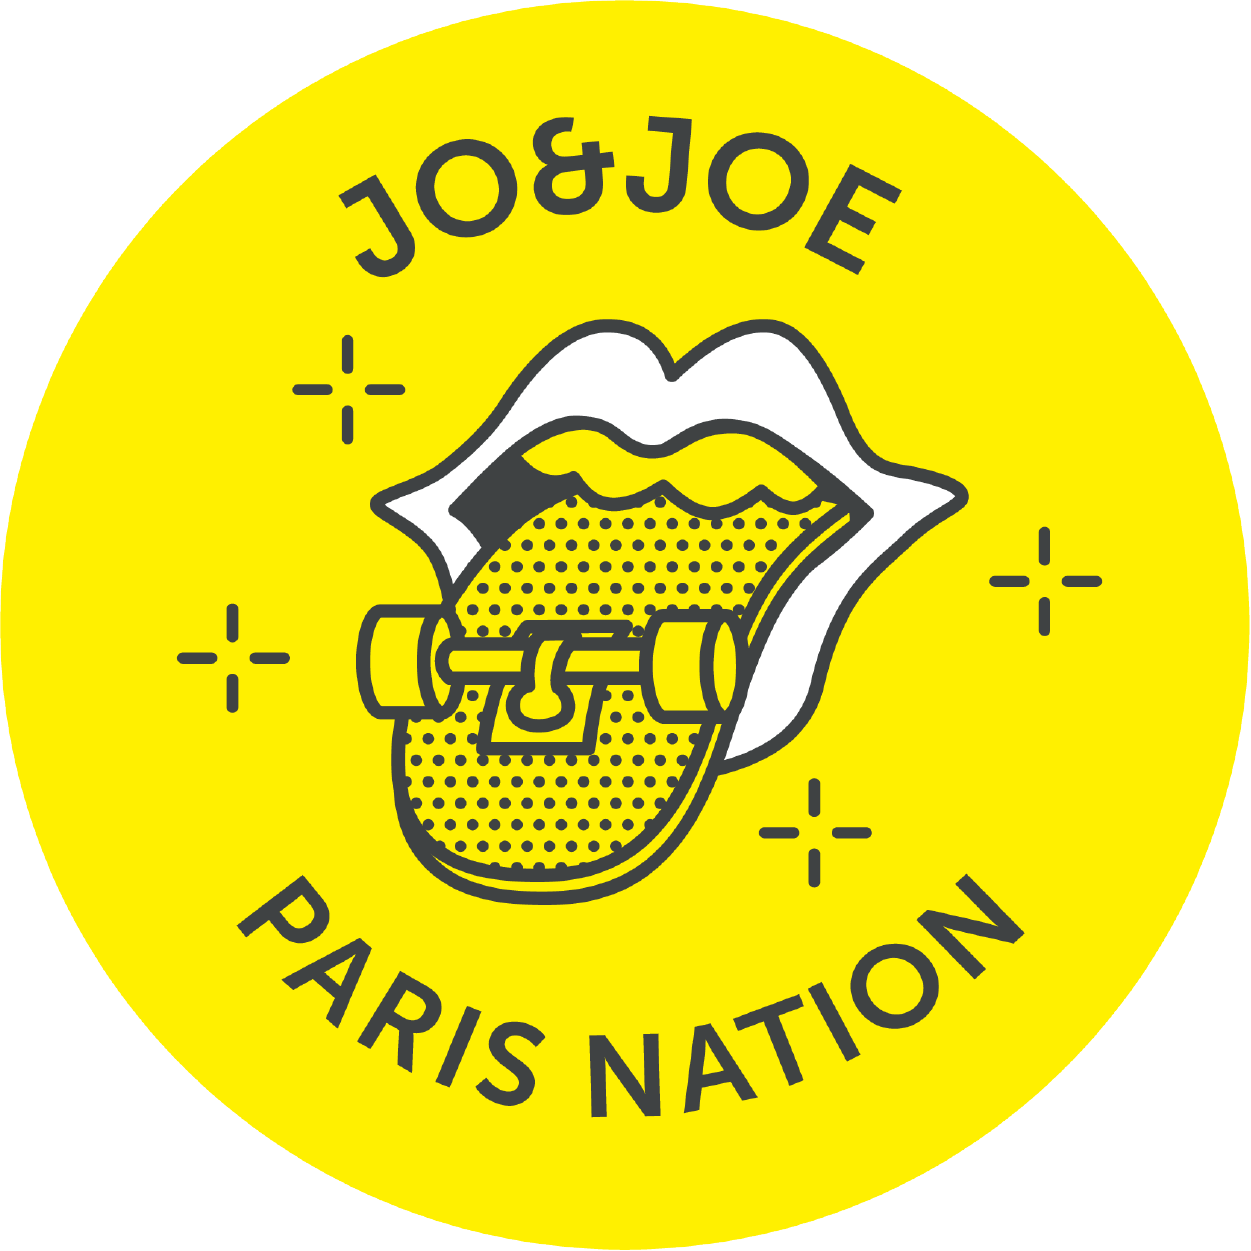 JO&JOE Paris Nation Restaurant & Bar Logo